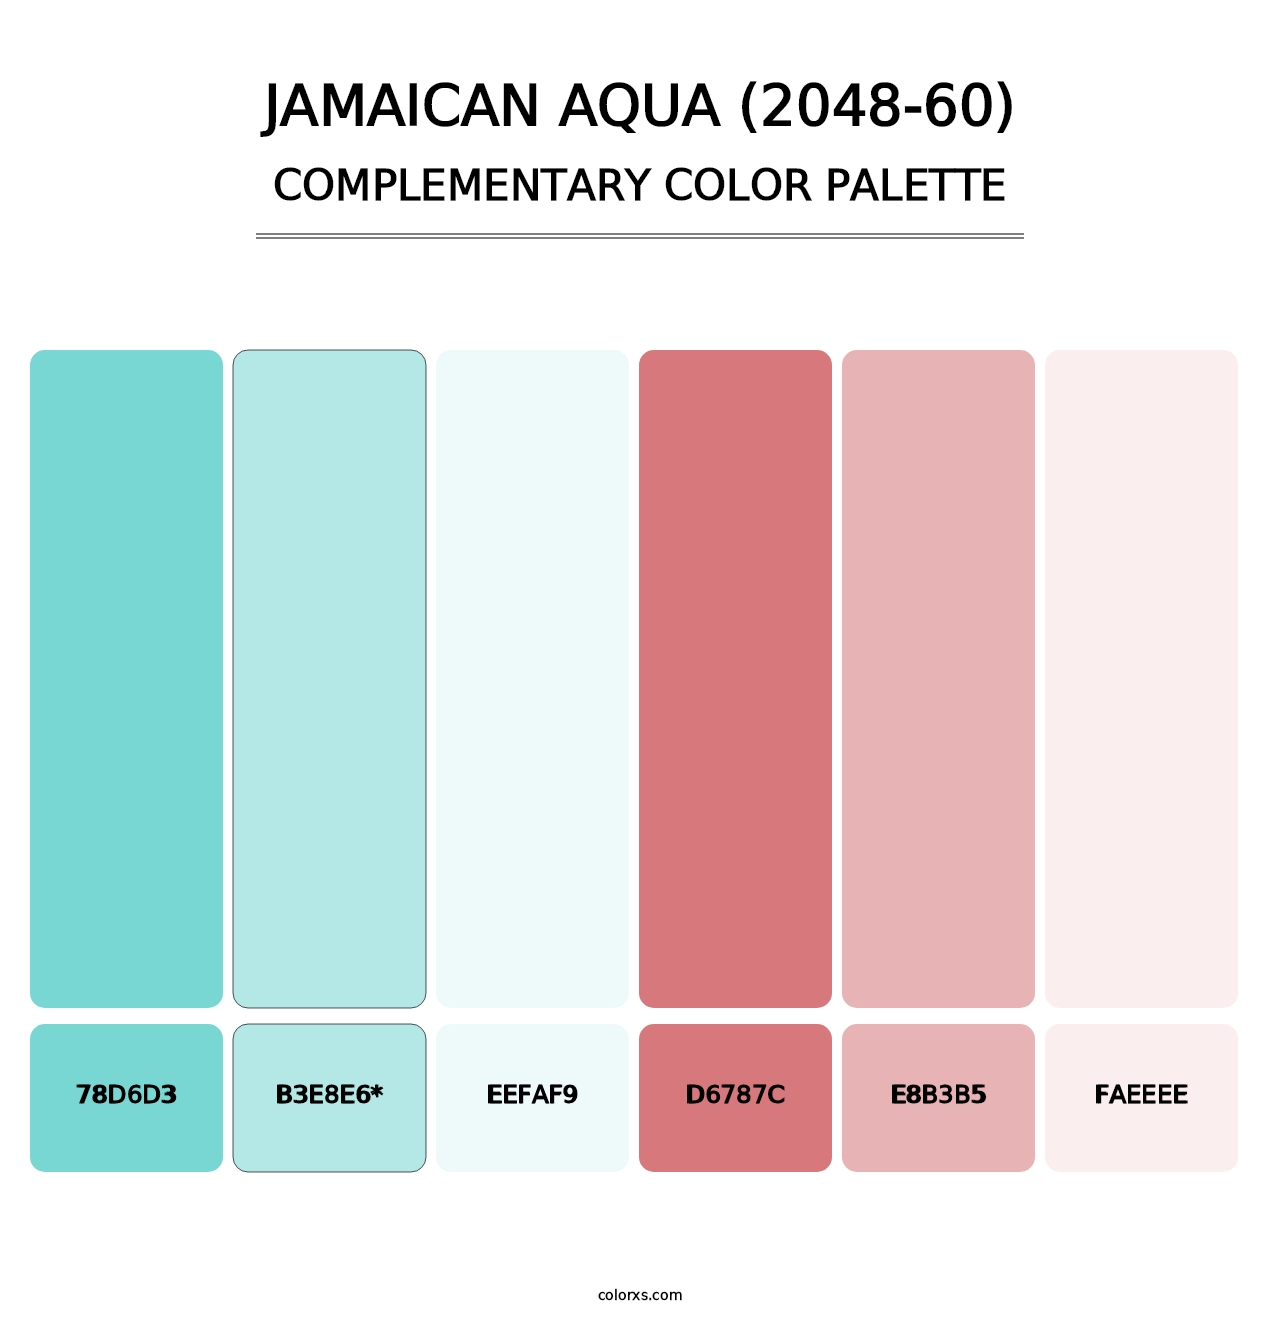 Jamaican Aqua (2048-60) - Complementary Color Palette